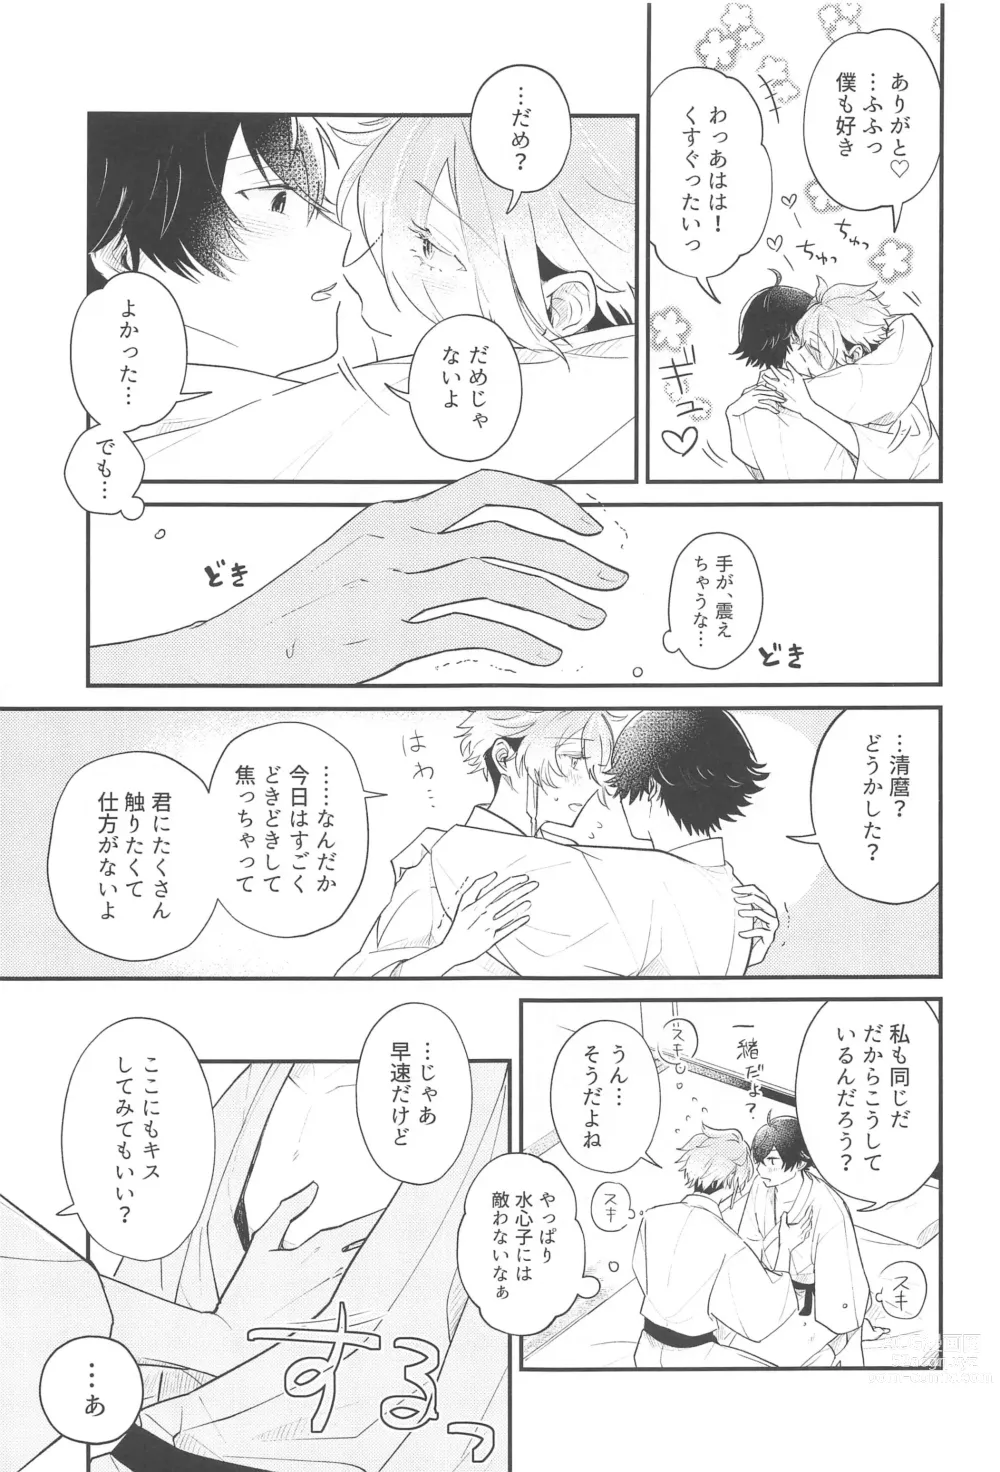 Page 8 of doujinshi Sonosaki wa Ariarito